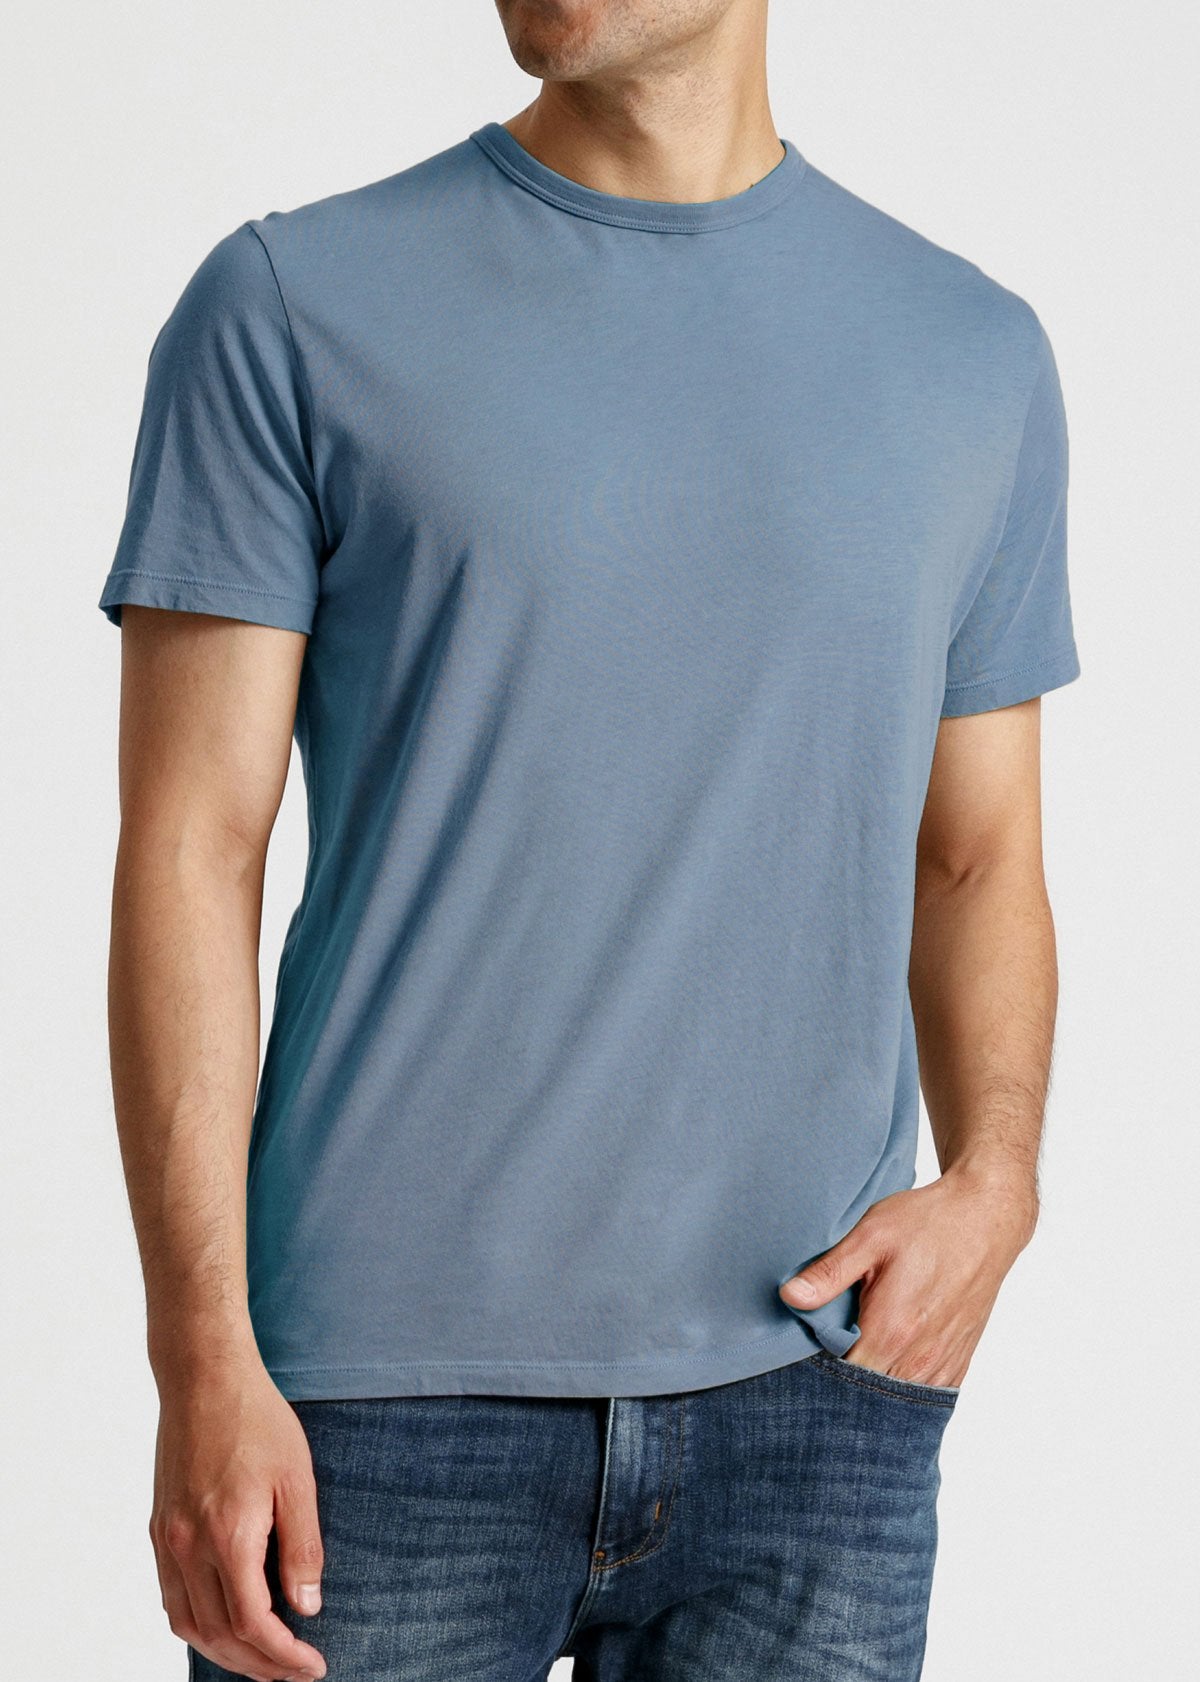 Mens soft lightweight light blue performance t-shirt front